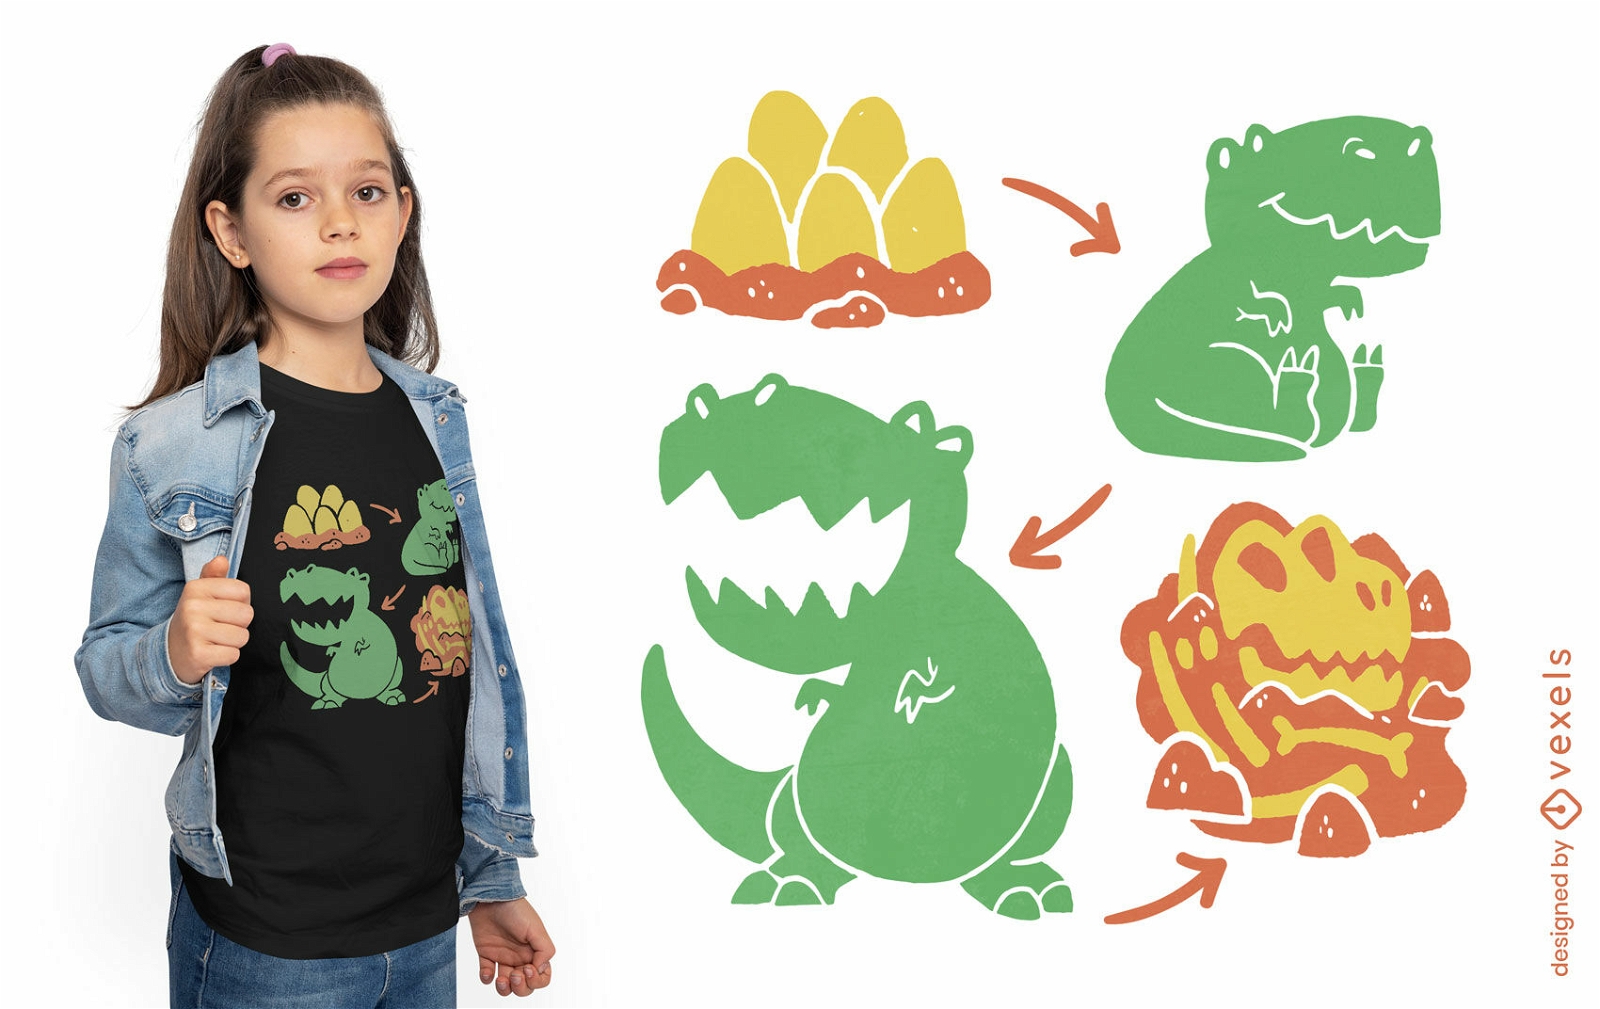 Dise?o de camiseta de evoluci?n animal de dinosaurio.